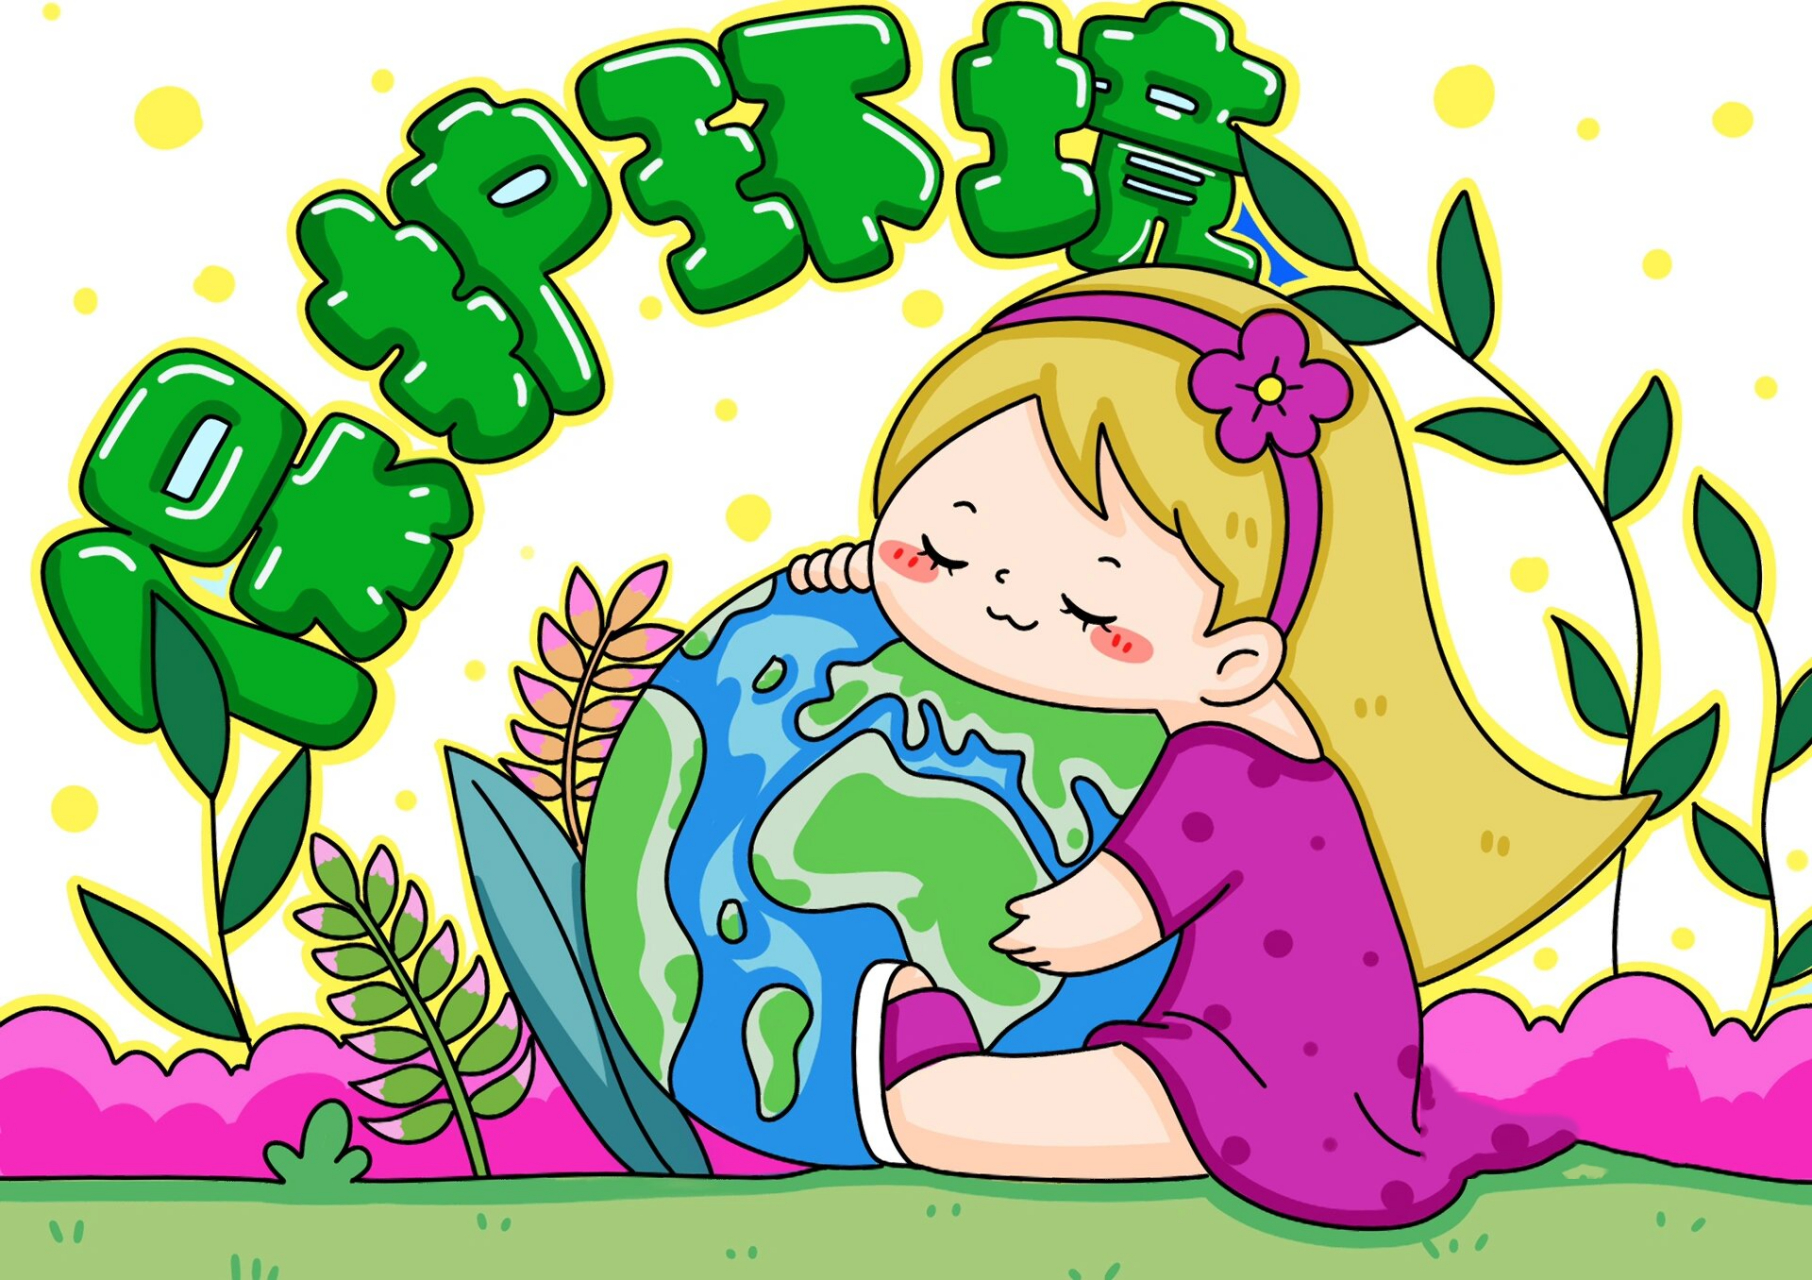 保护环境主题画 爱护地球 环保 儿童画 9315打印线稿